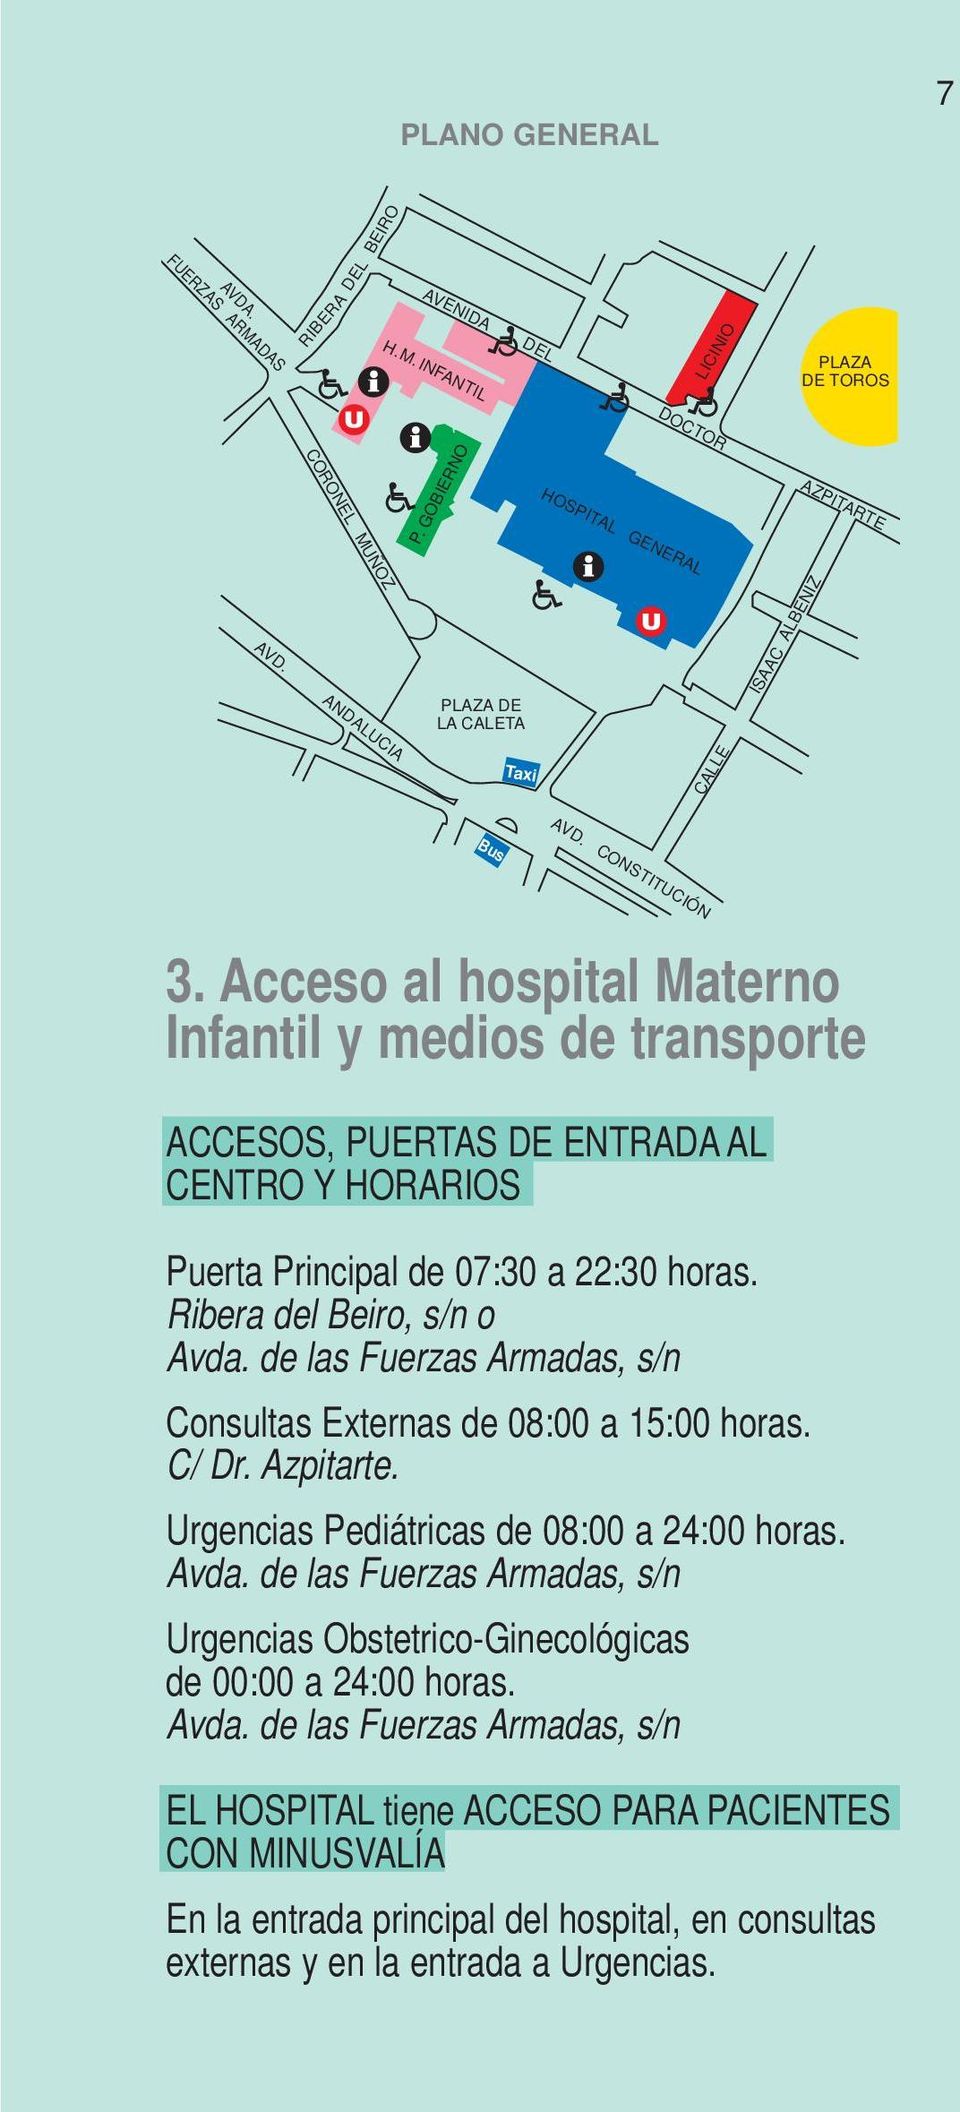 Acceso al hospital Materno Infantil y medios de transporte ACCESOS, PUERTAS DE ENTRADA AL CENTRO Y HORARIOS Puerta Principal de 07:30 a 22:30 horas. Ribera del Beiro, s/n o Avda.